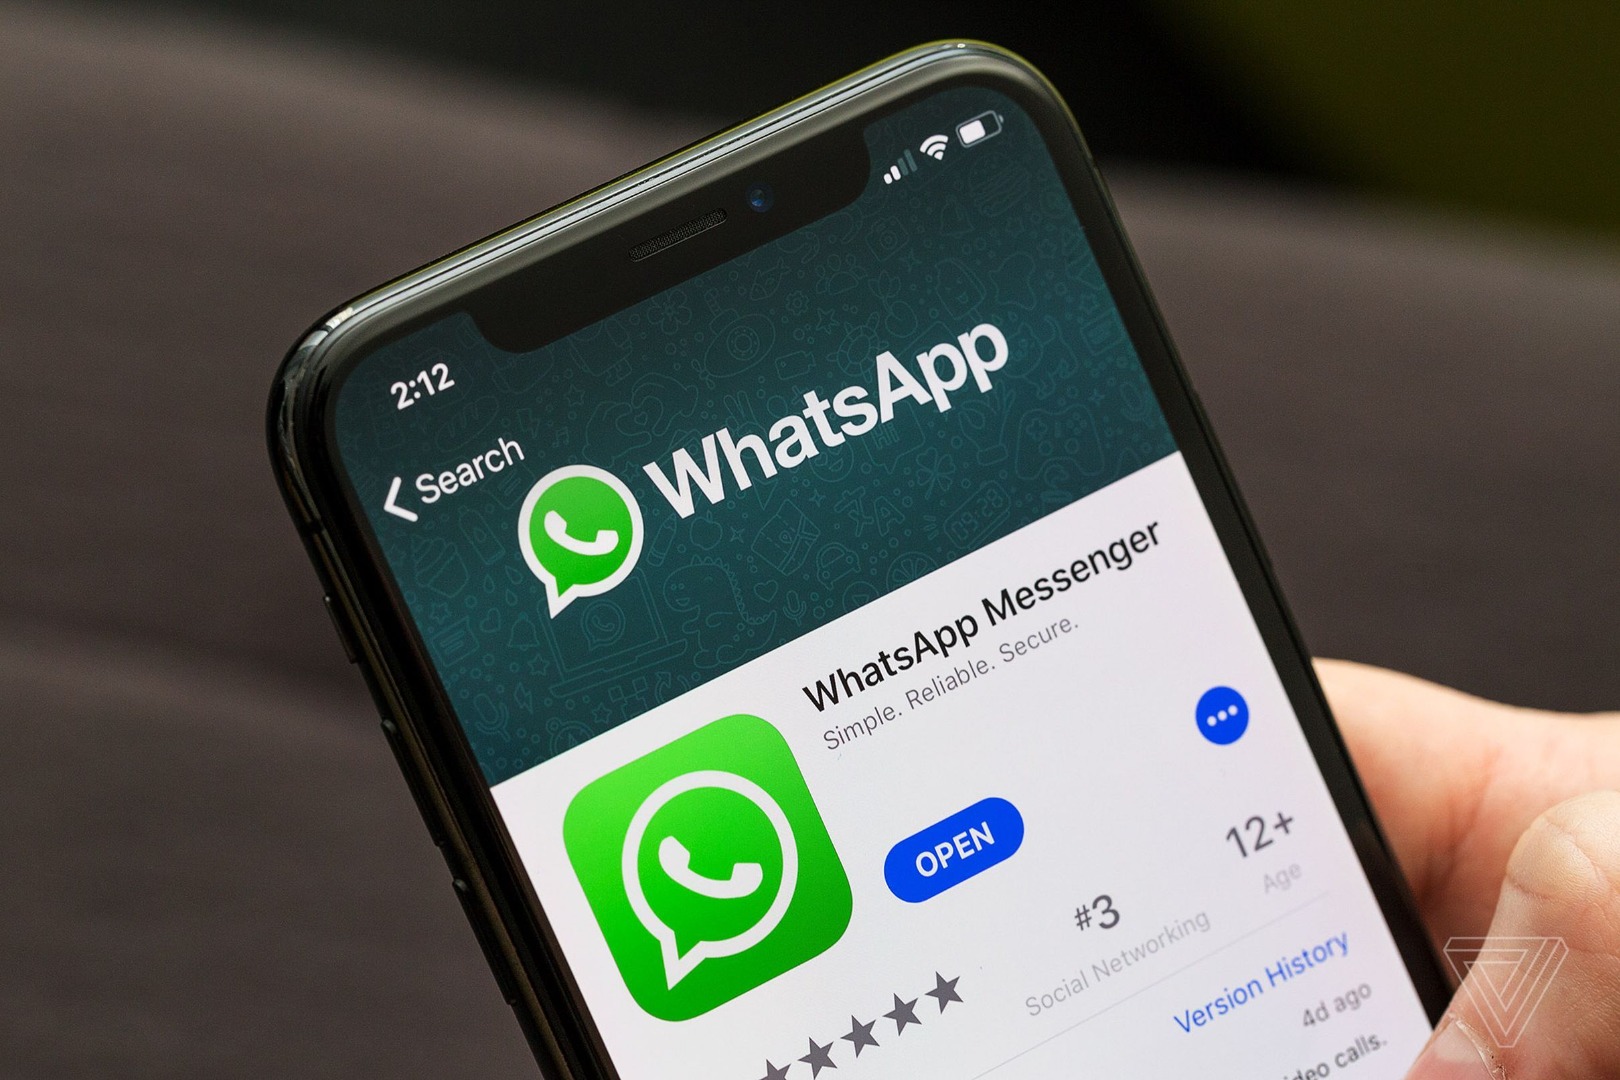 WhatsApp’ın yeni özelliği ne? WhatsApp’ın yeni tatil modu özelliği nedir?